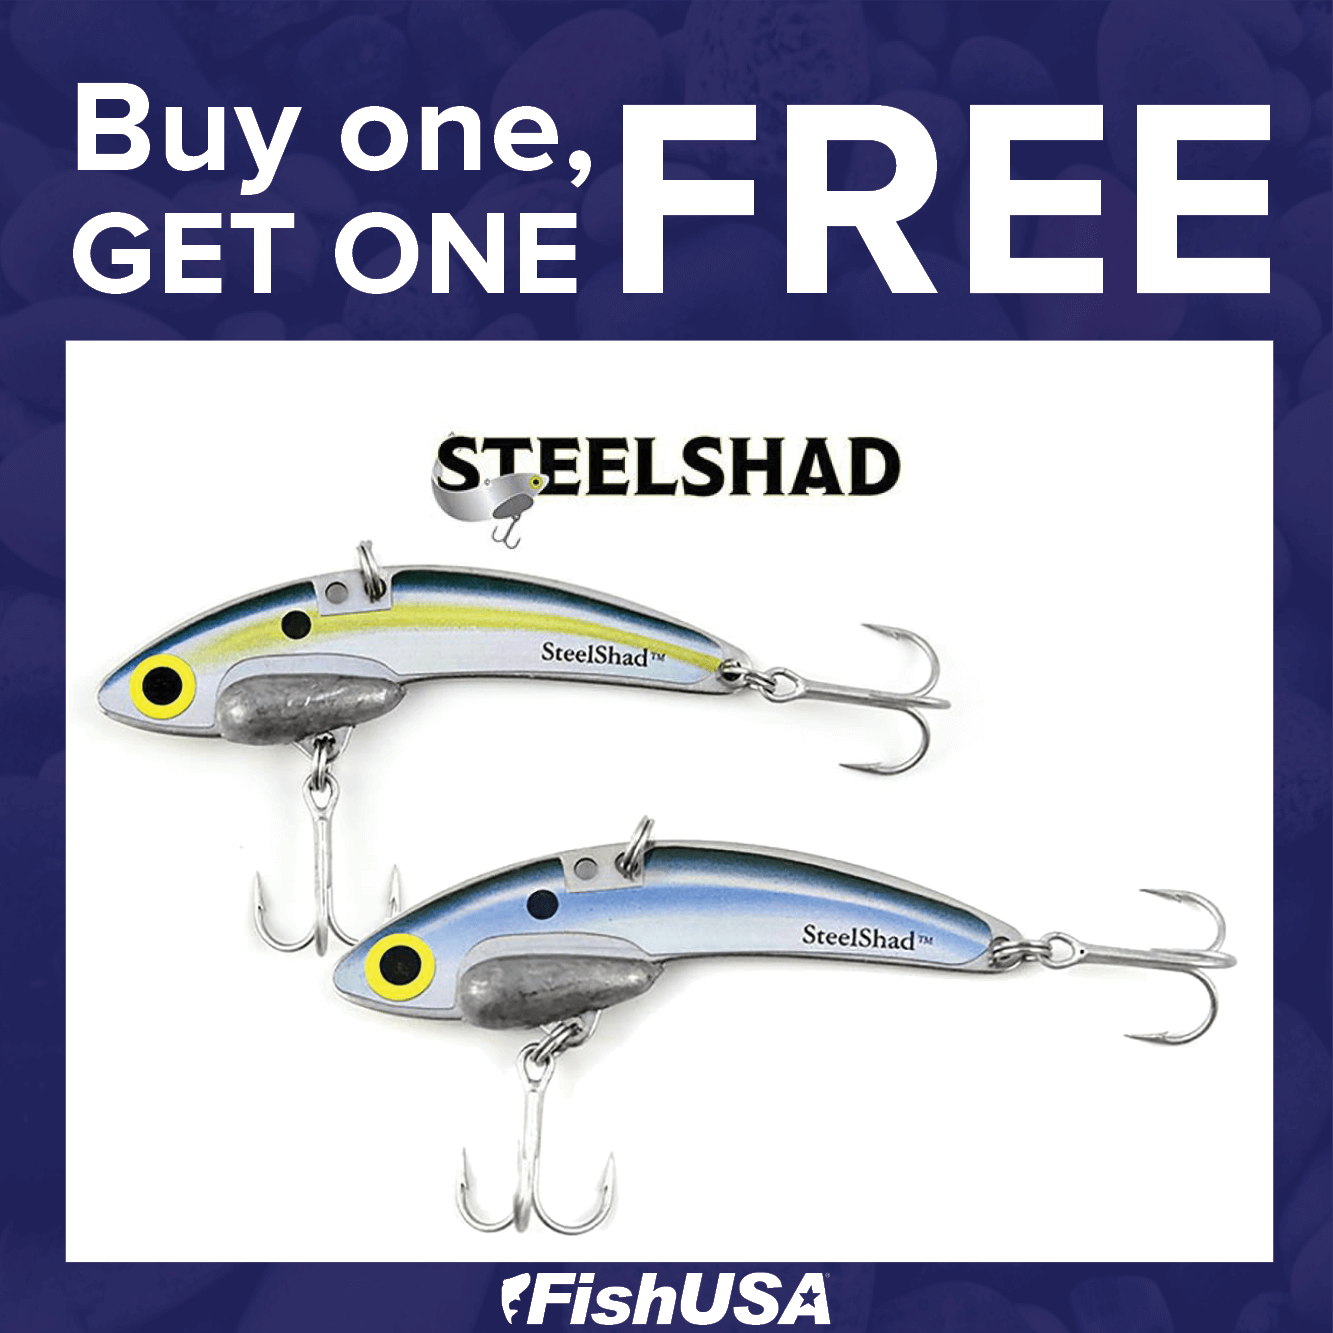 Buy 1, Get 1 FREE on SteelShad Original Blade Baits!